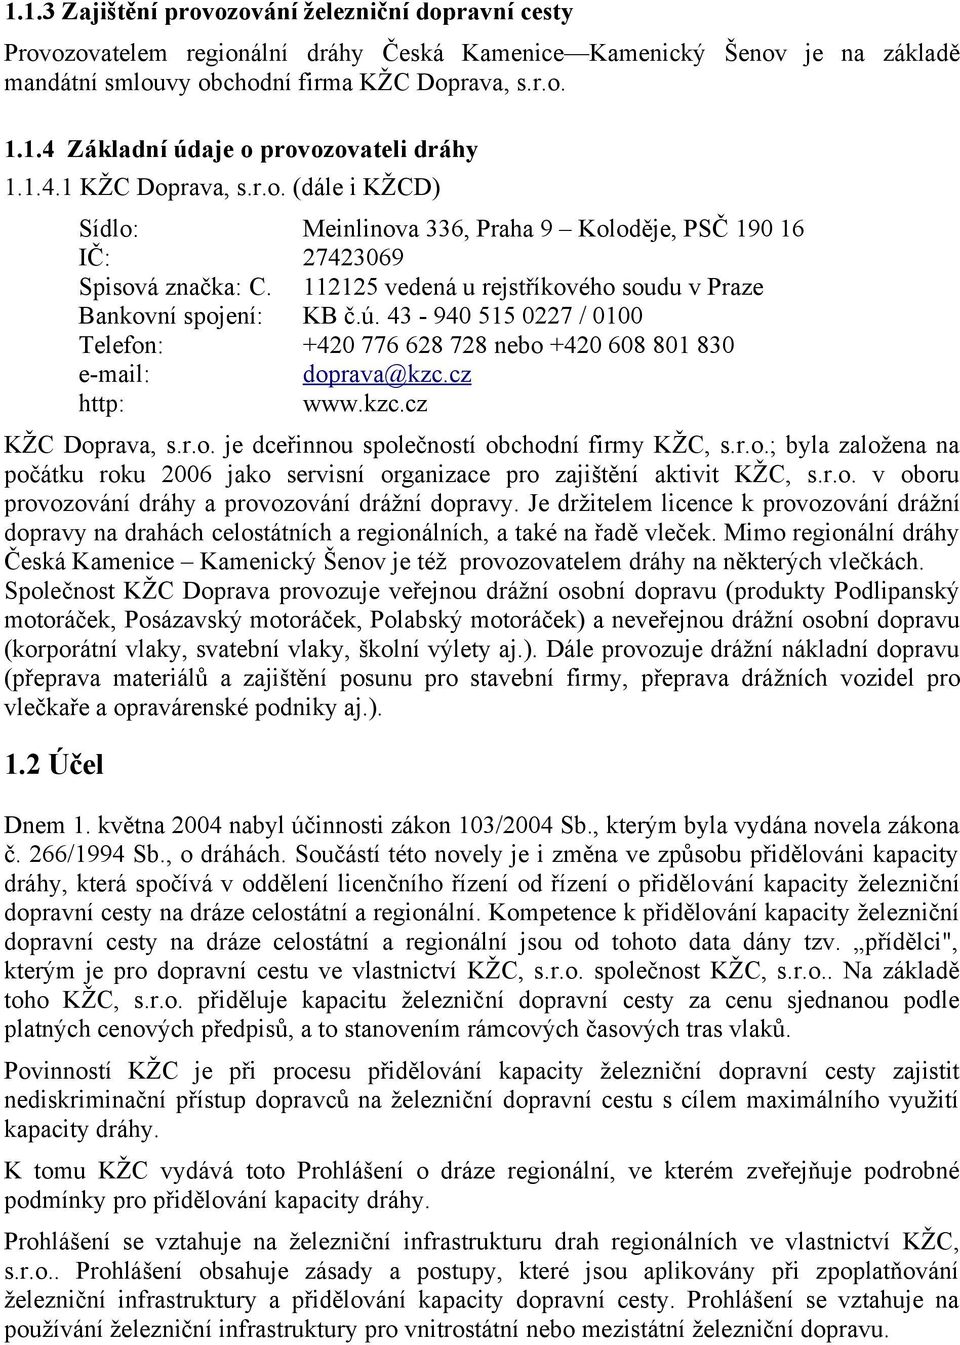 43-940 515 0227 / 0100 Telefon: +420 776 628 728 nebo +420 608 801 830 e-mail: doprava@kzc.cz http: www.kzc.cz KŽC Doprava, s.r.o. je dceřinnou společností obchodní firmy KŽC, s.r.o.; byla založena na počátku roku 2006 jako servisní organizace pro zajištění aktivit KŽC, s.